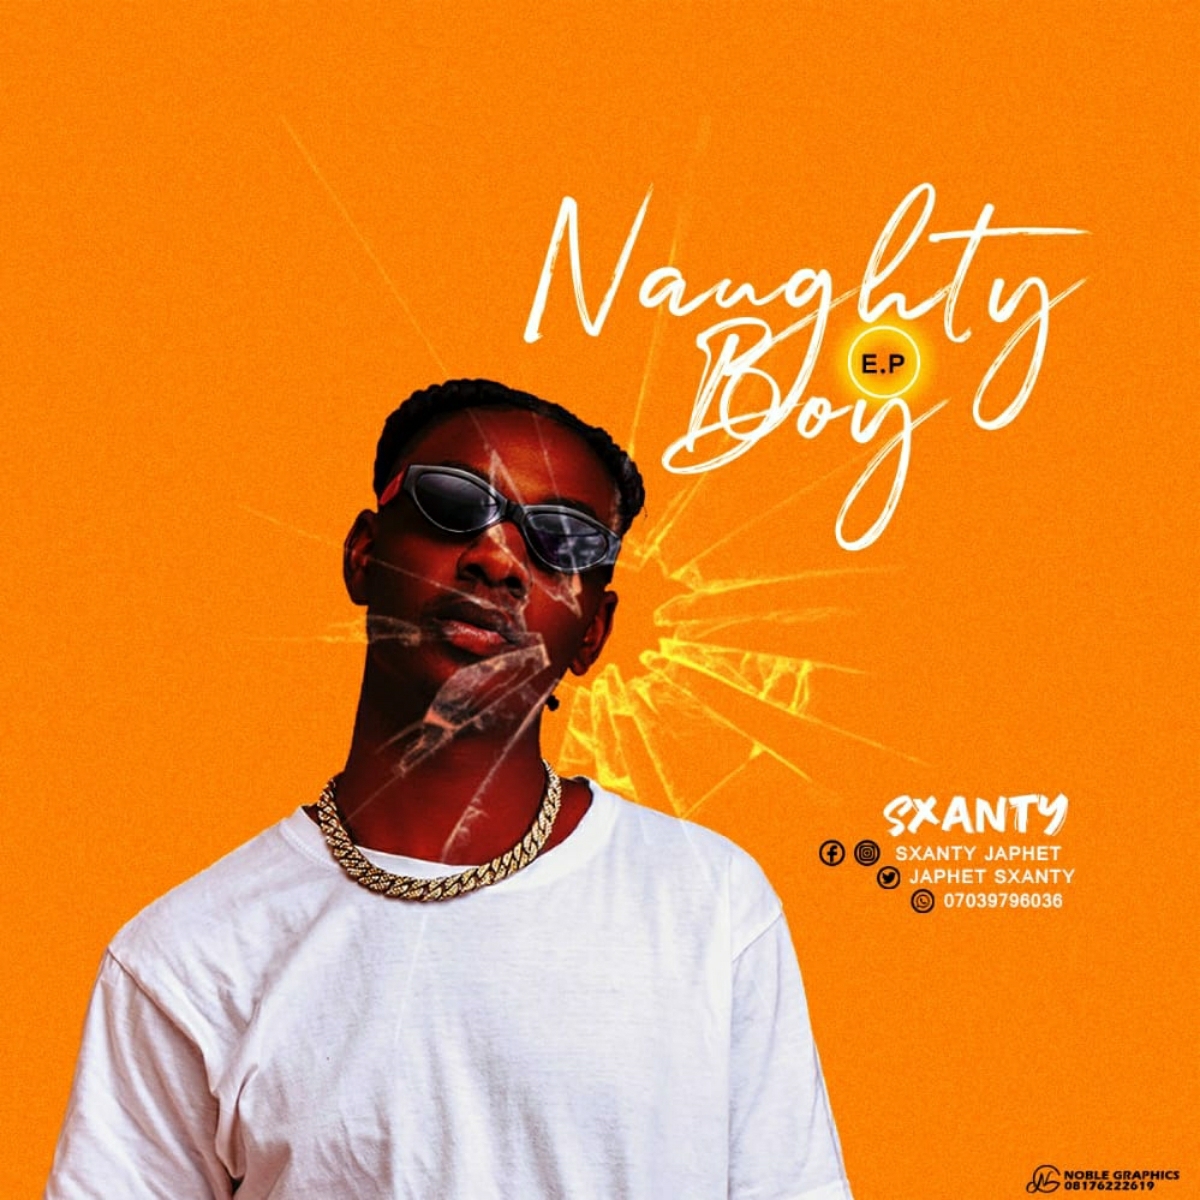 Sxanty – Naughty Boy EP